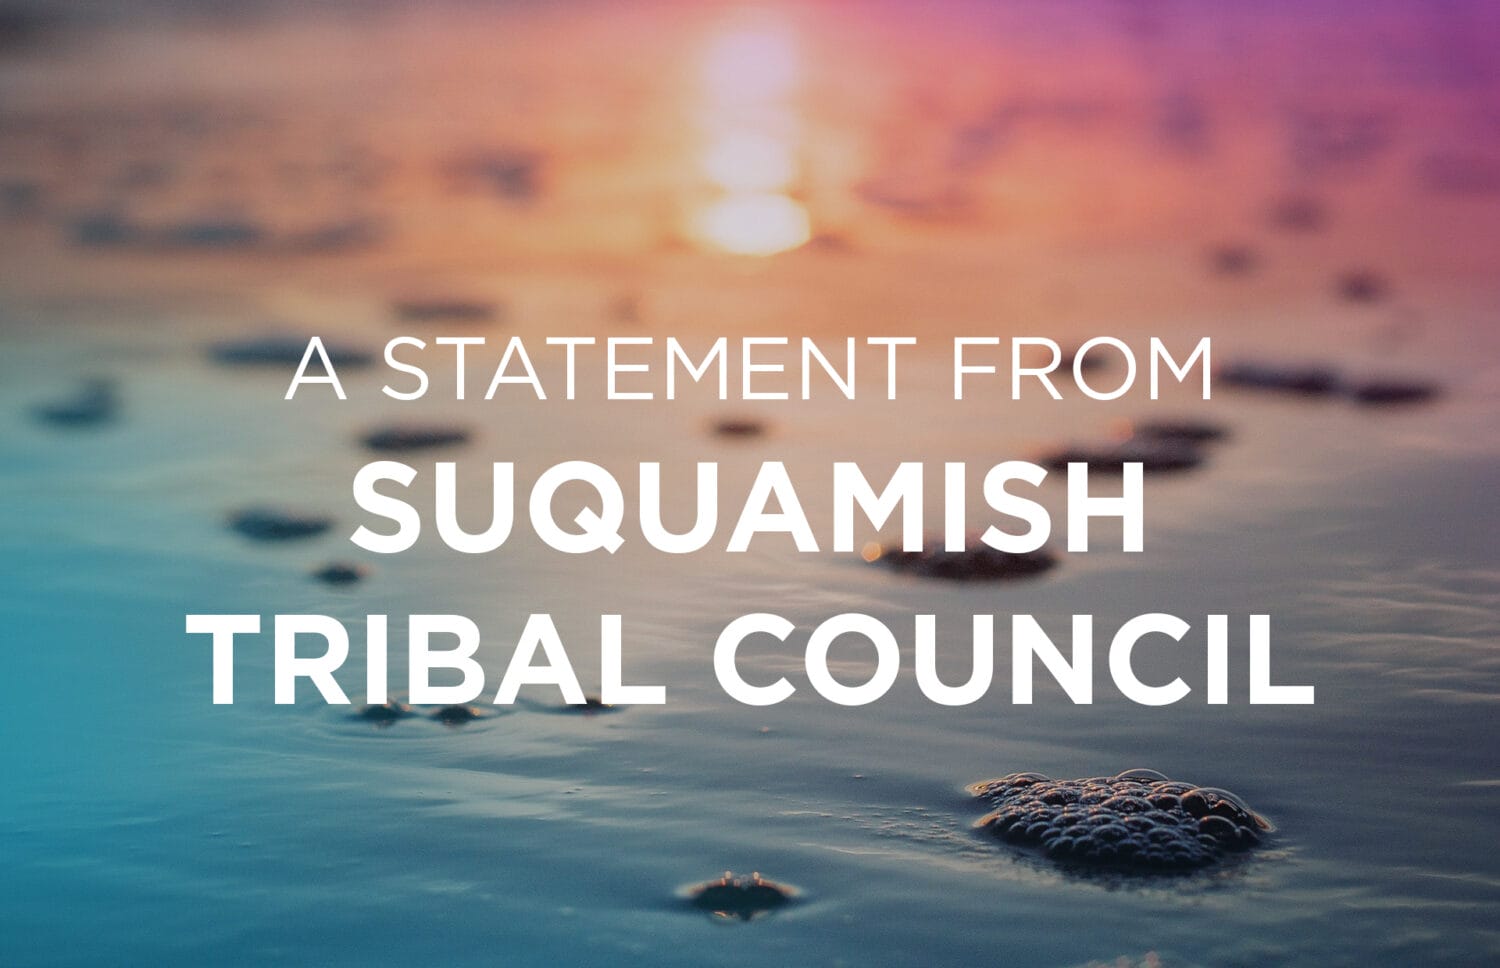 Suquamish Council Statement